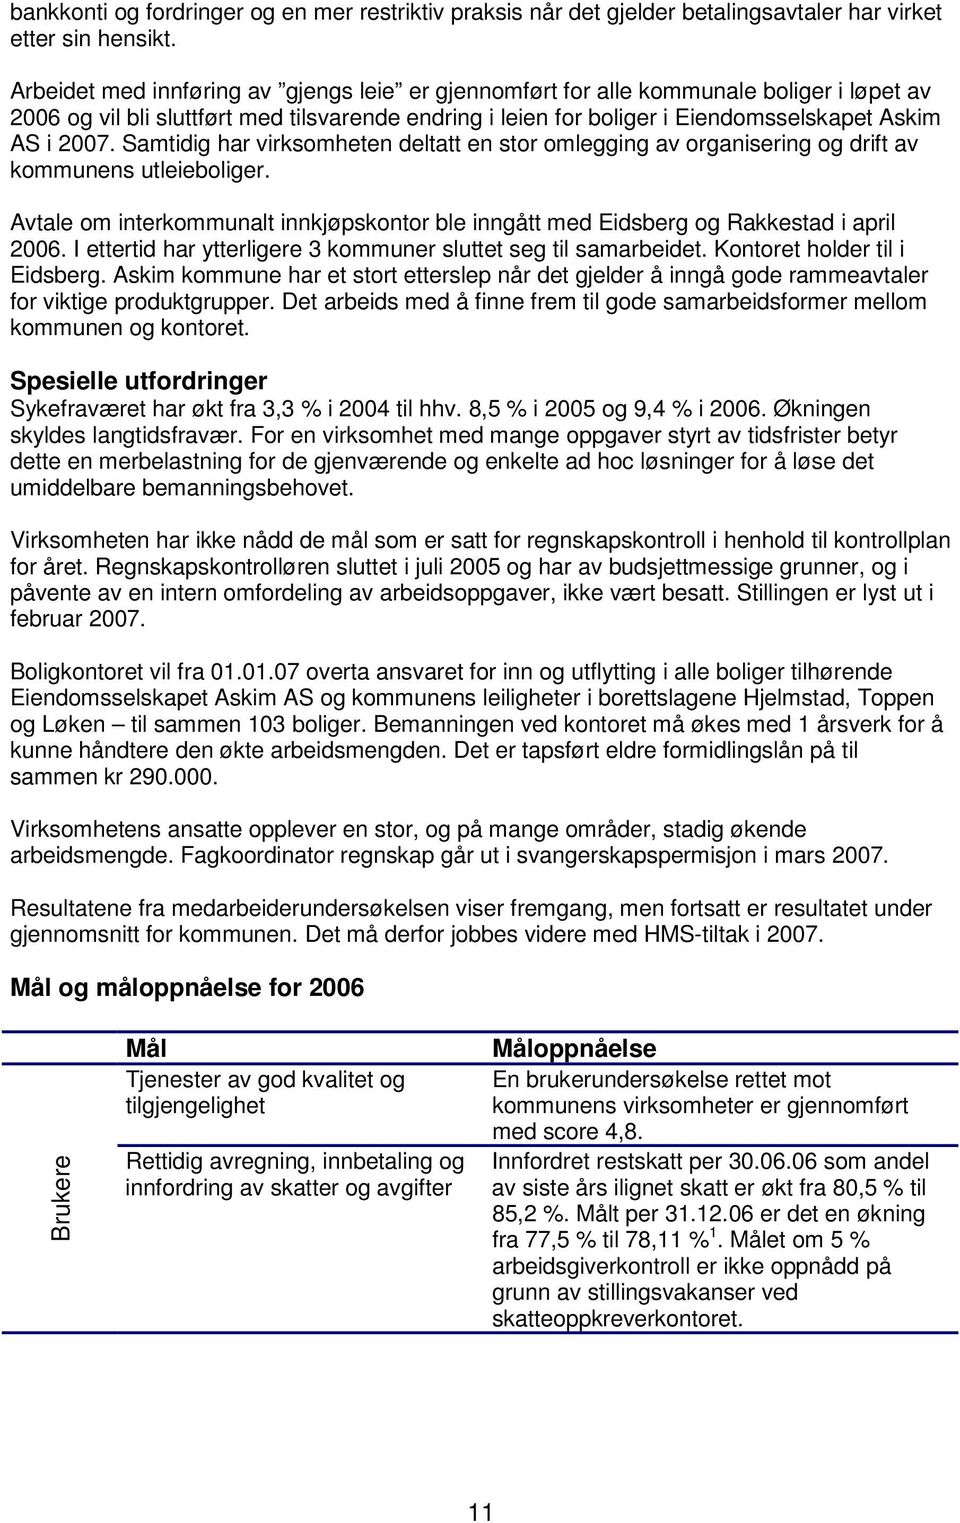 Samtidig har virksomheten deltatt en stor omlegging av organisering og drift av kommunens utleieboliger. Avtale om interkommunalt innkjøpskontor ble inngått med Eidsberg og Rakkestad i april 2006.